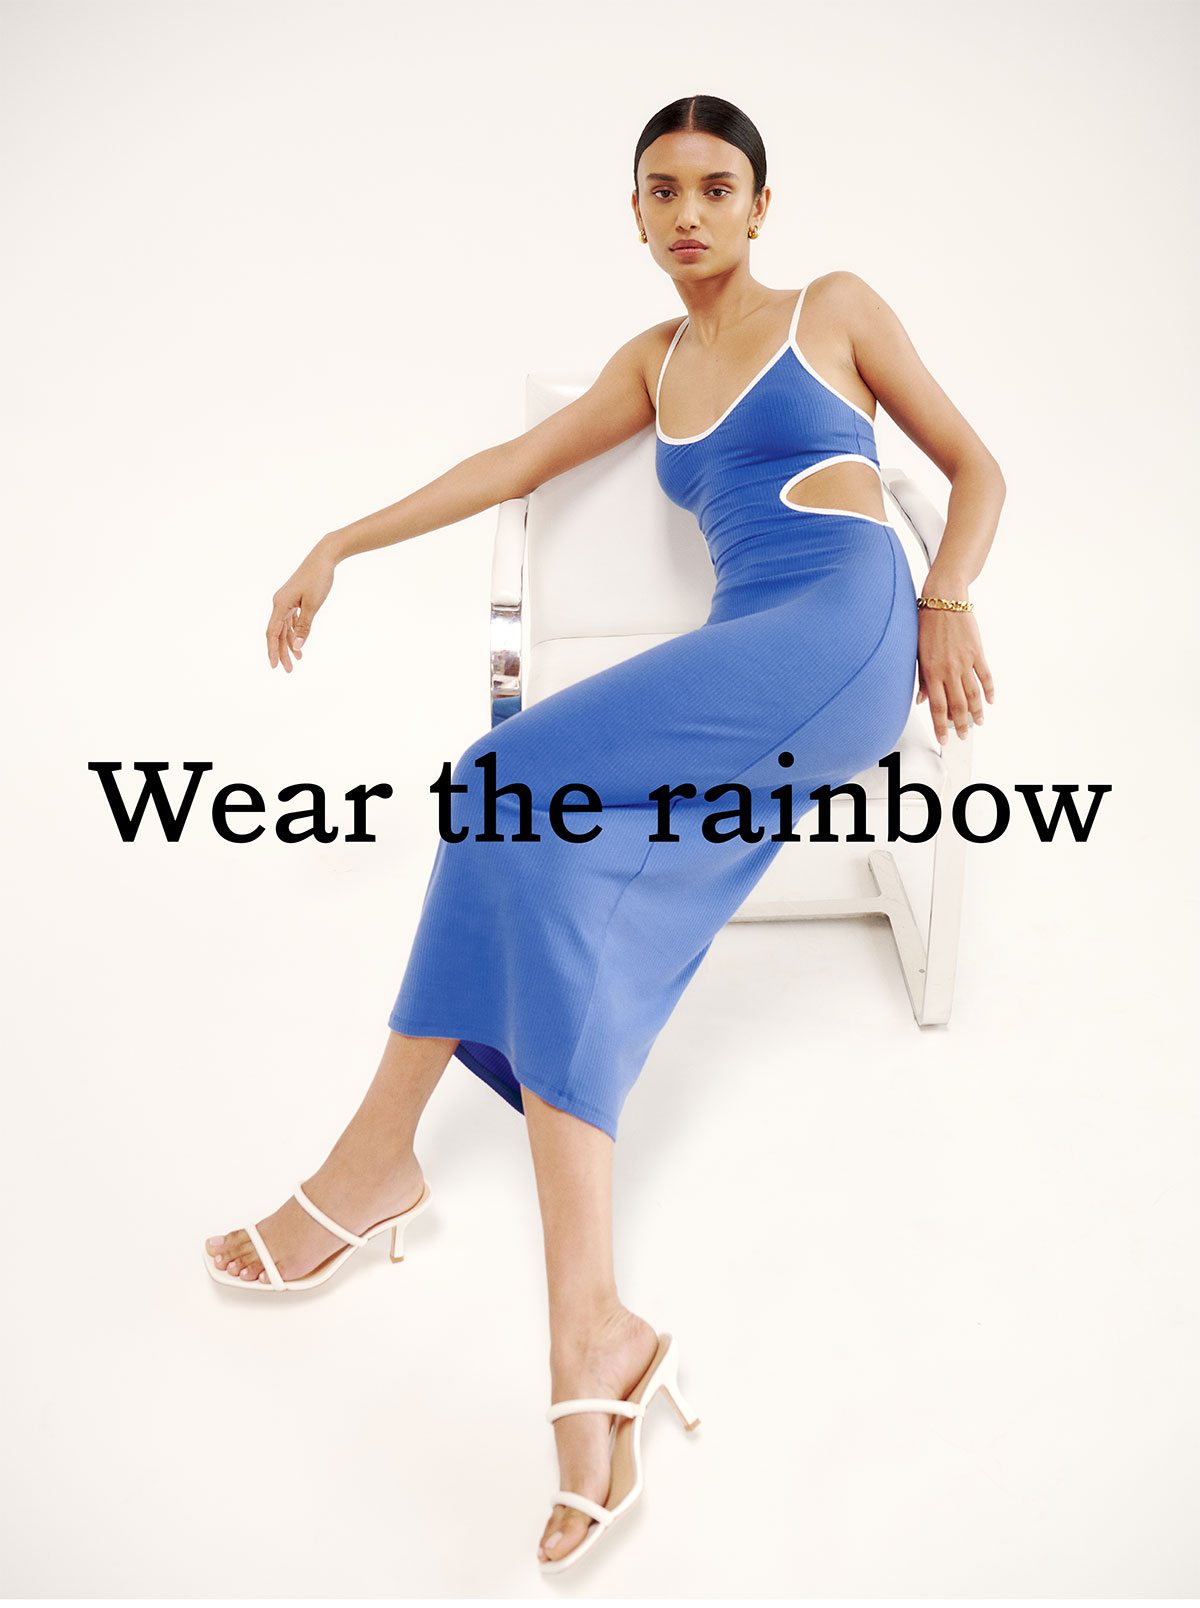 Wear the rainbow